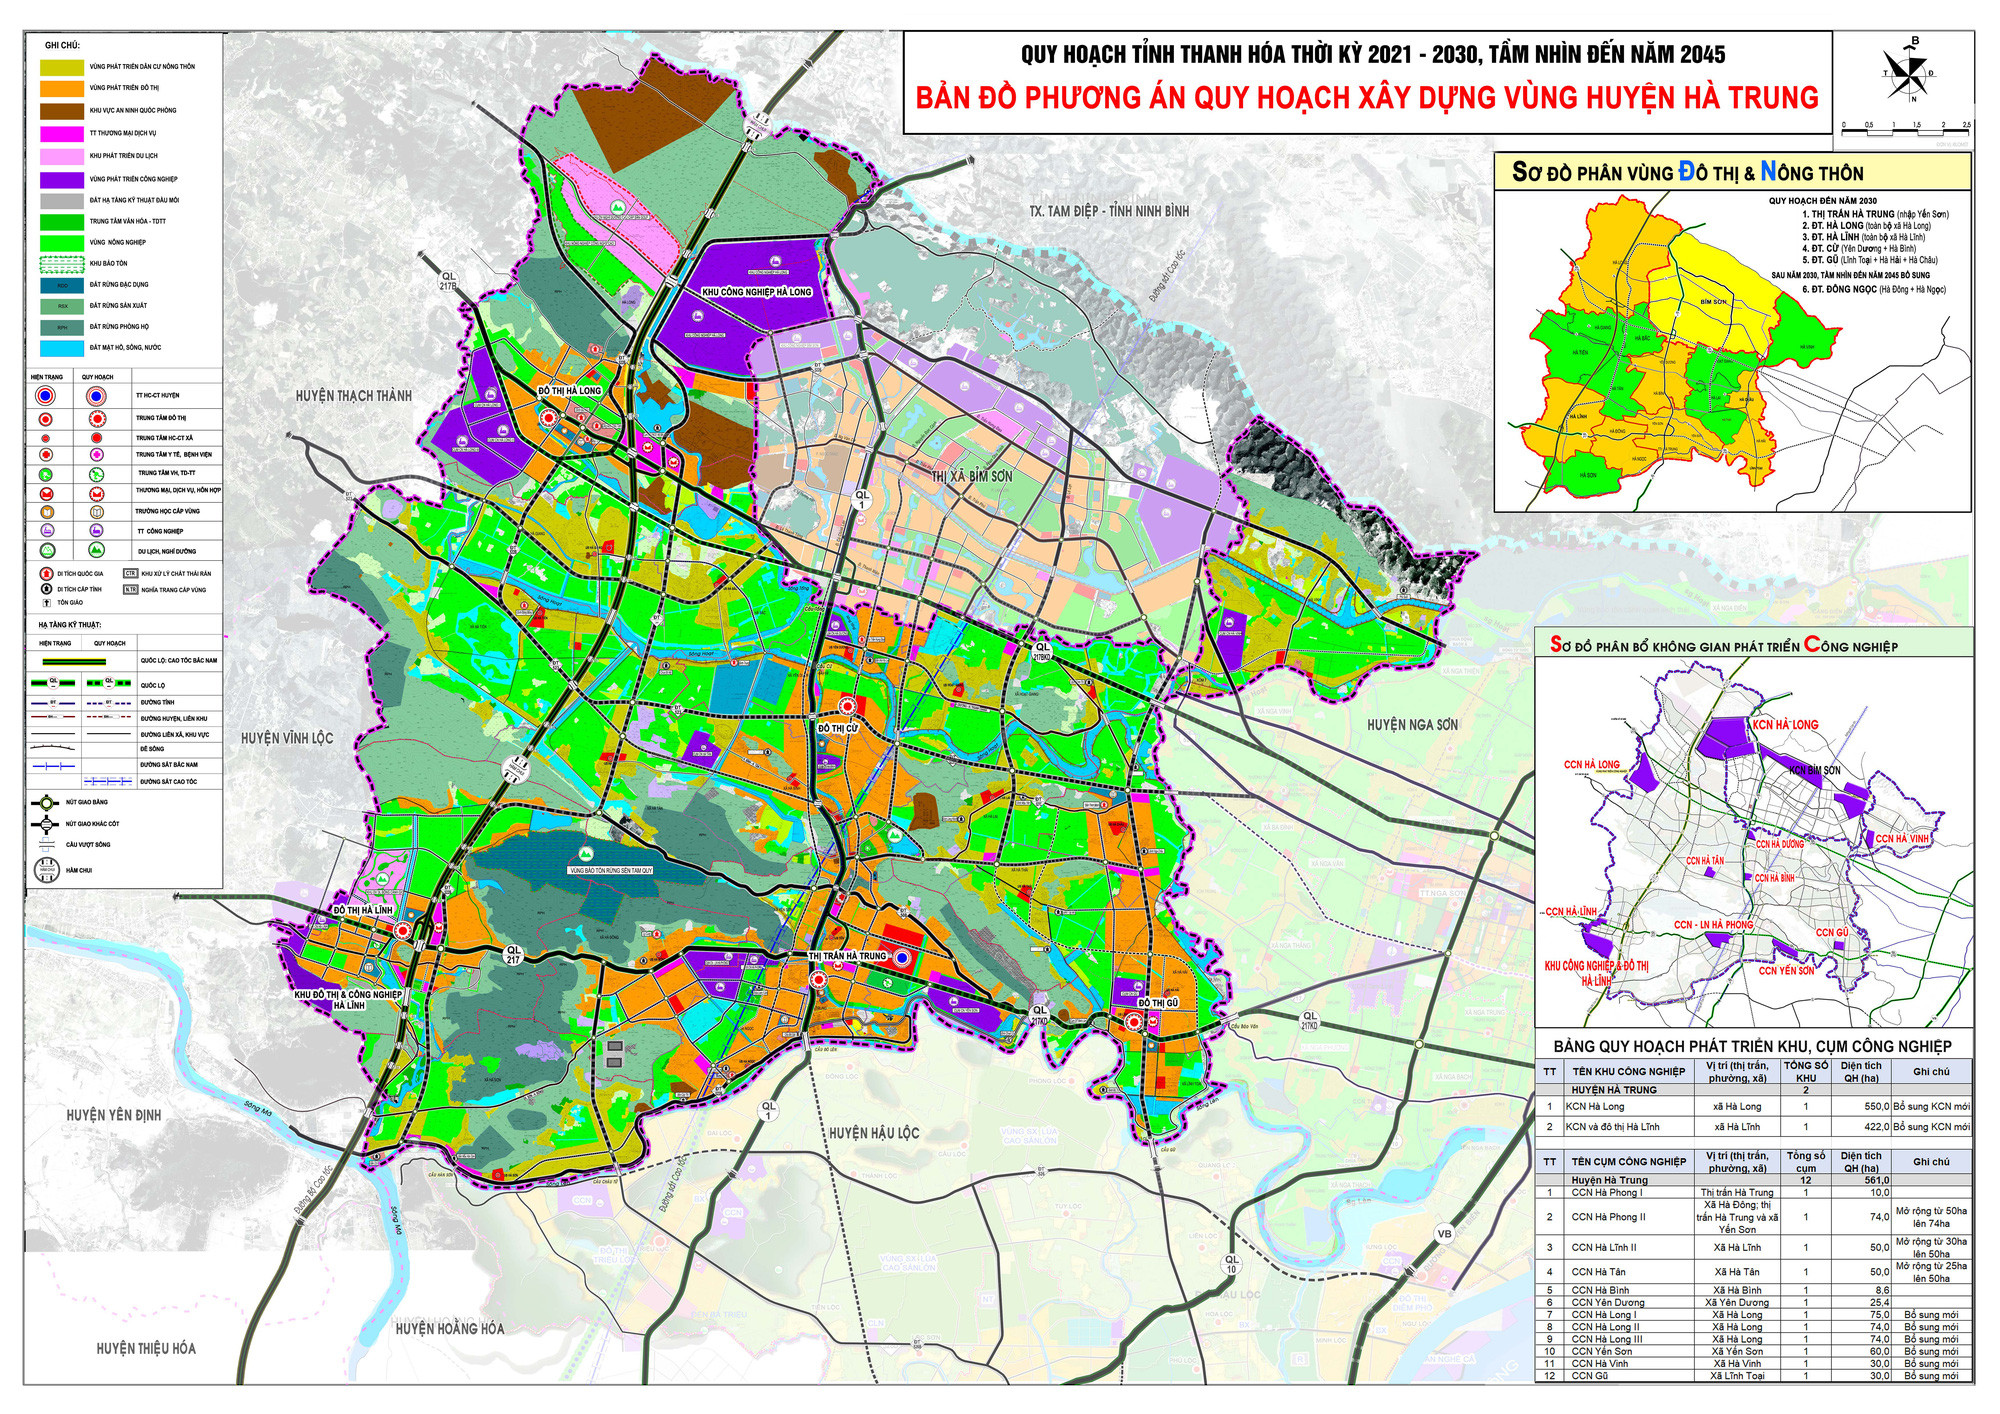 Bản đồ quy hoạch giao thông huyện Hà Trung